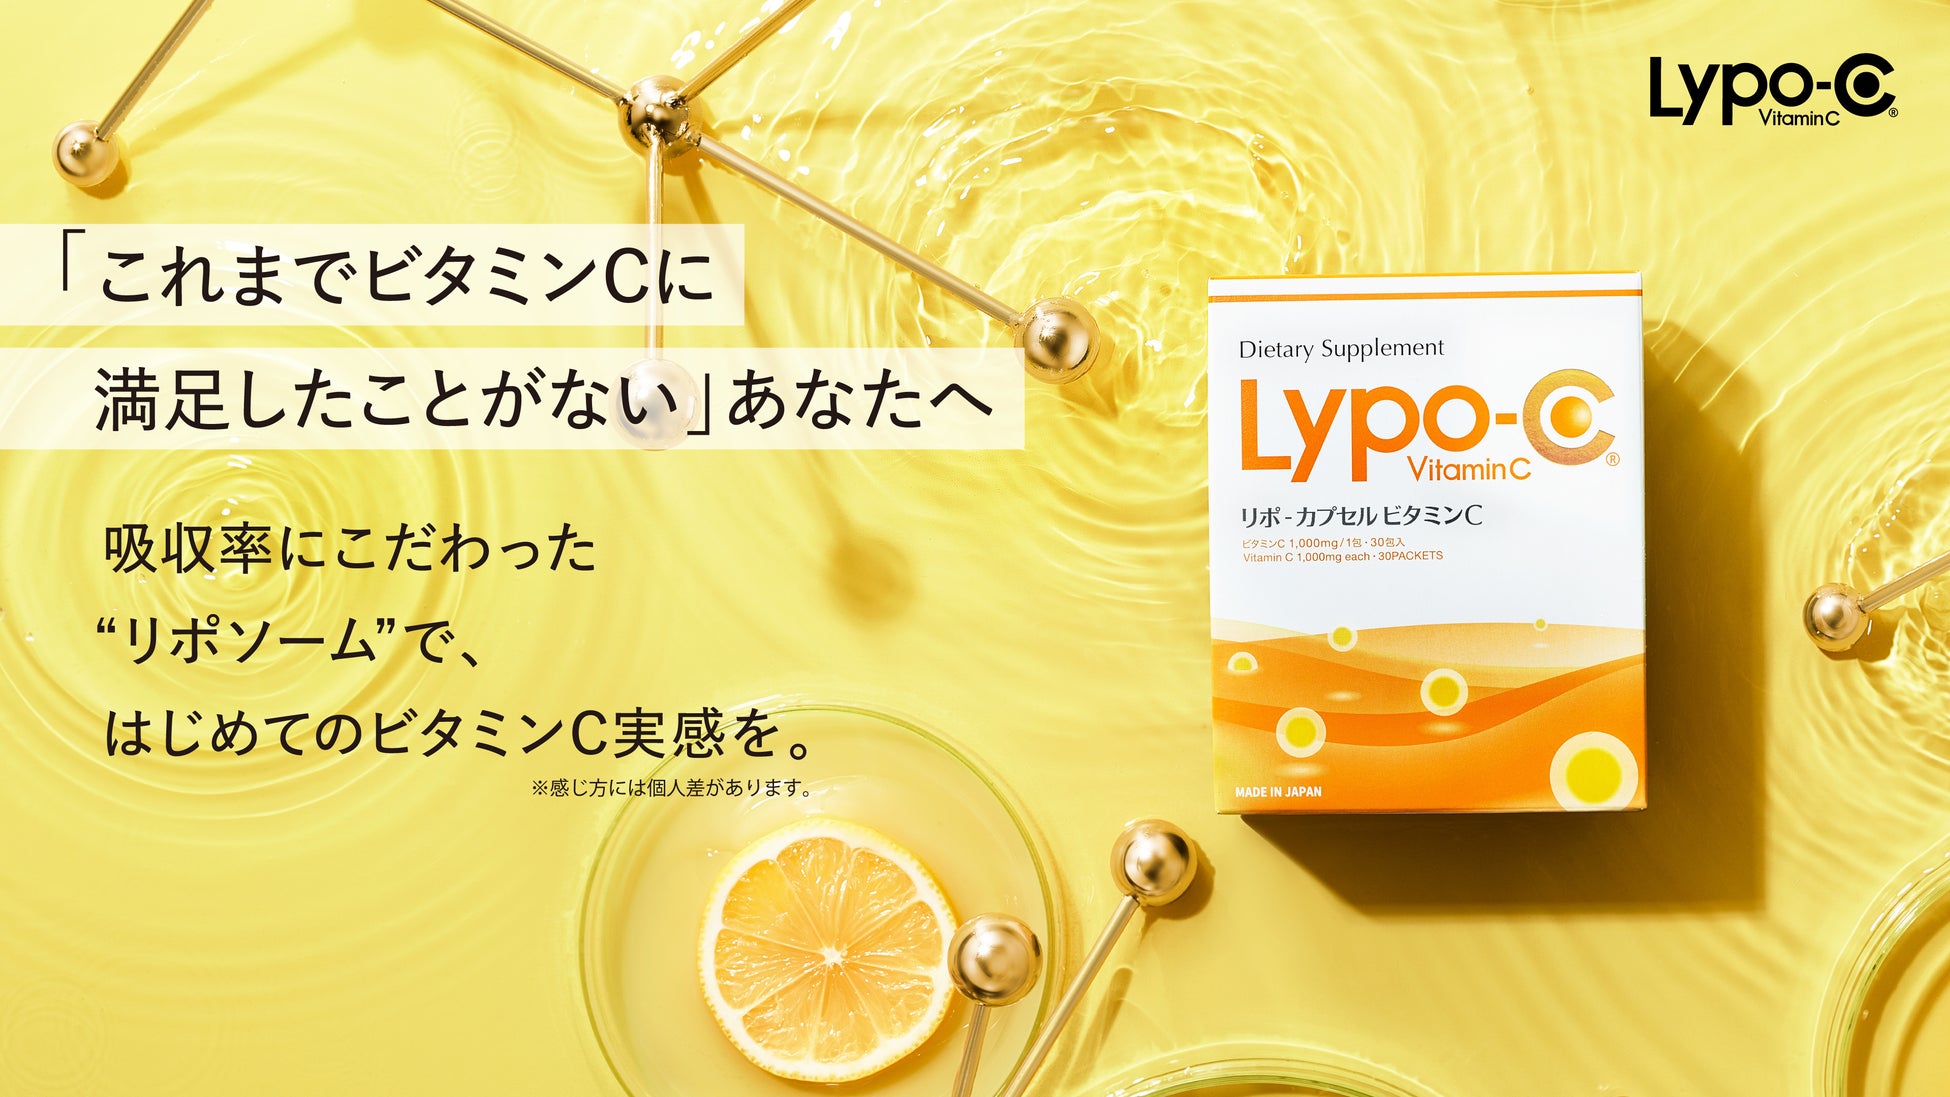 LYpoc カプセルビタミンC リポ カプセル ビタミン リポ リポソーム 30包入 健康食品 ビタミンサプリメント ふるさと割 - ビタミン